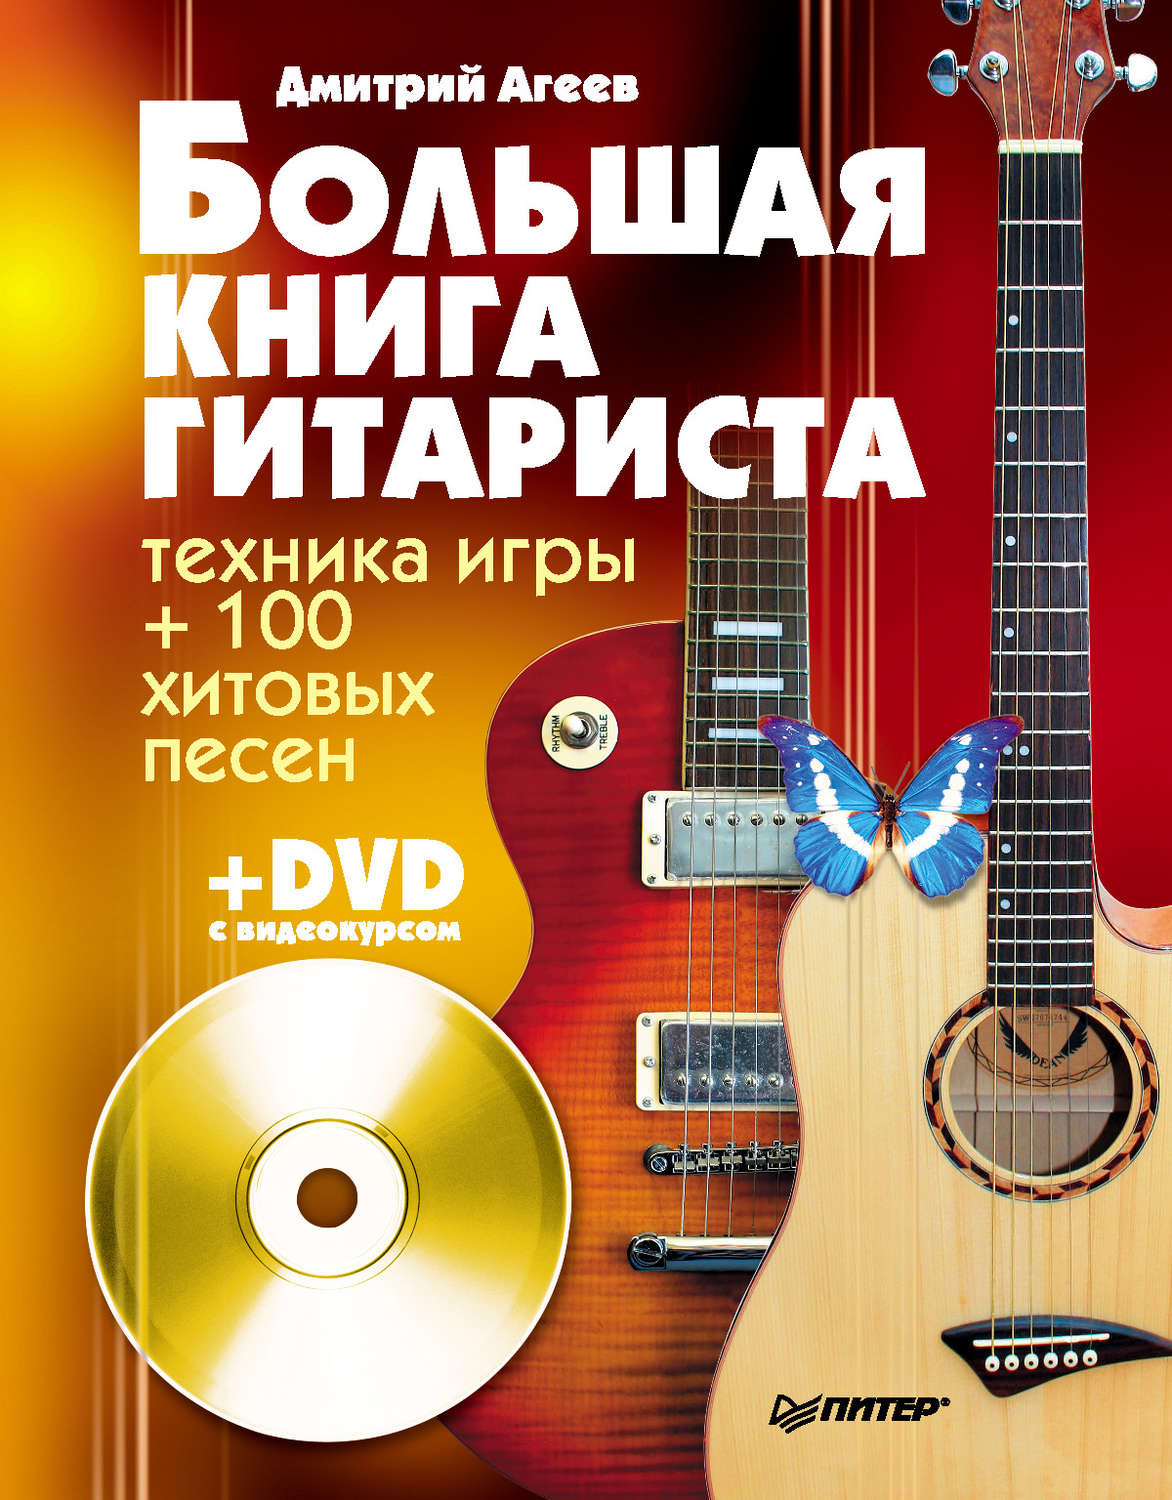 Дмитрий агеев большая книга гитариста скачать бесплатно